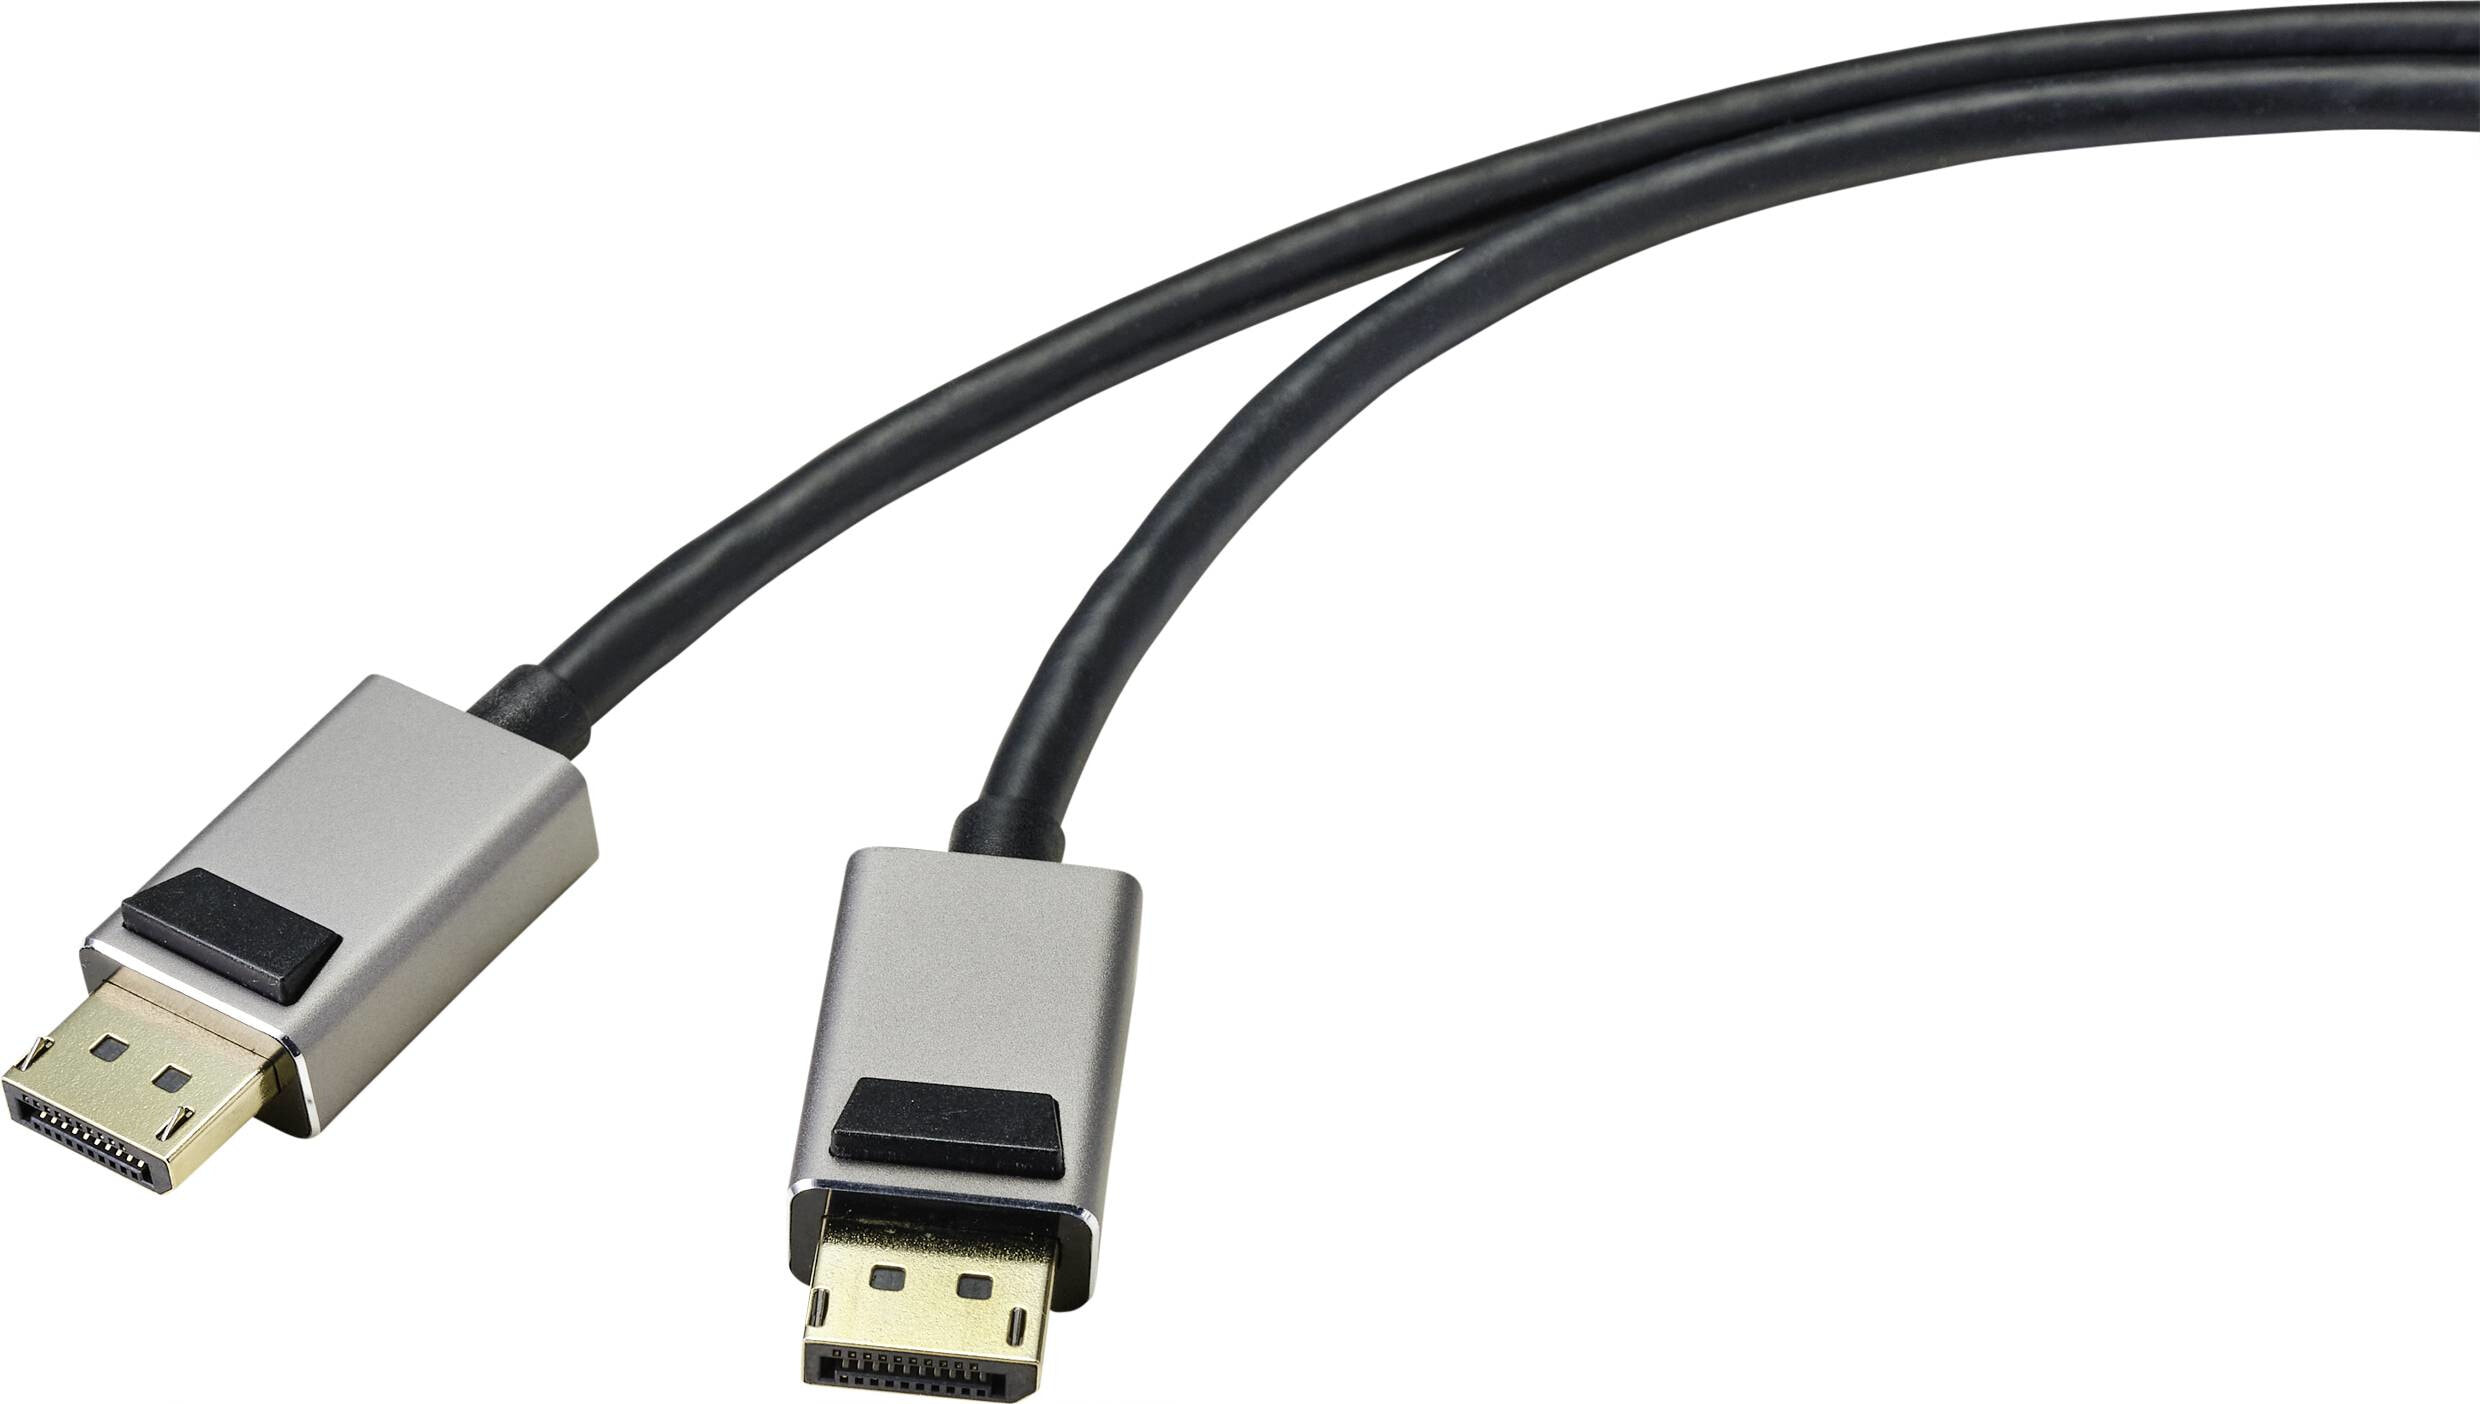 SpeaKa Professional DisplayPort Anschlusskabel Stecker Stecker 1.00 m Schwarz - Digital/Display/Video